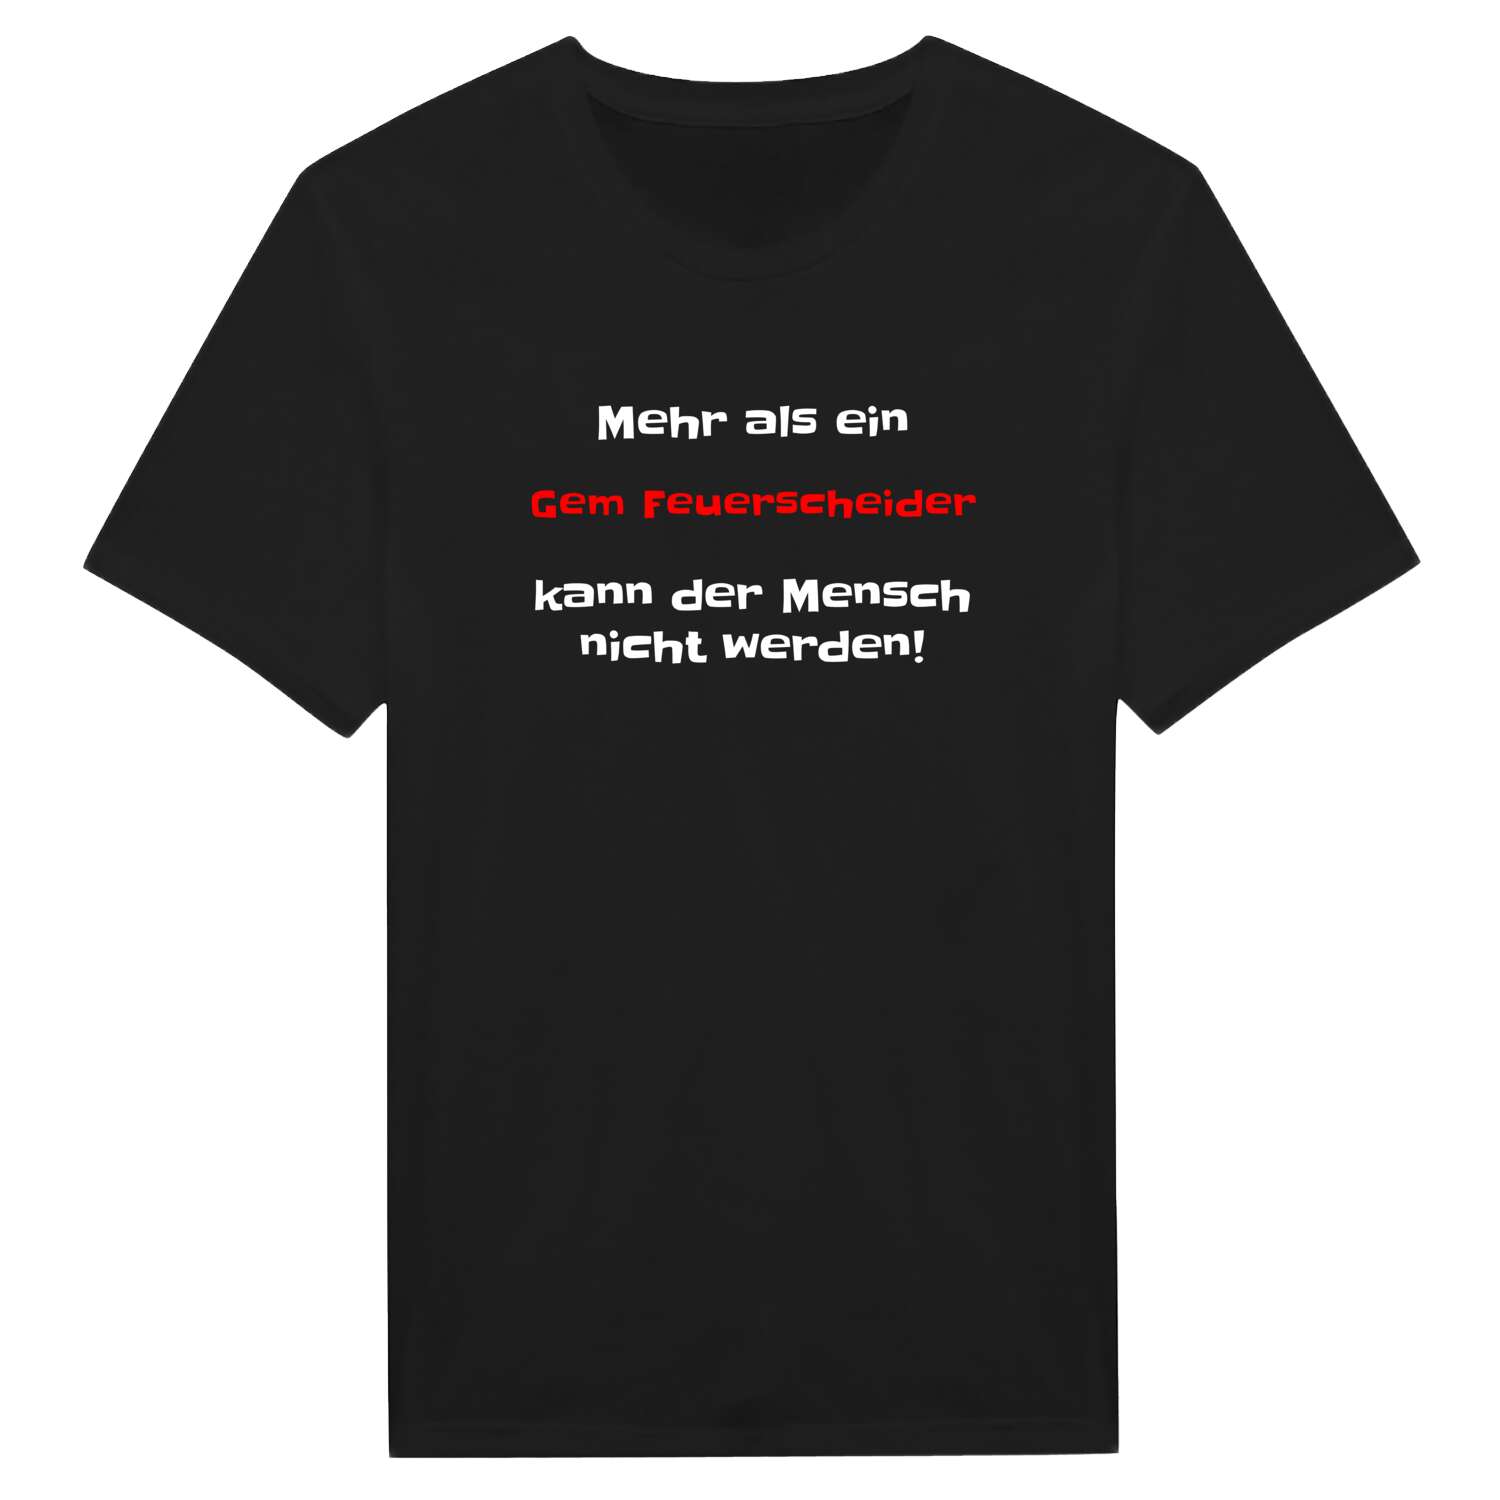 Gem Feuerscheid T-Shirt »Mehr als ein«